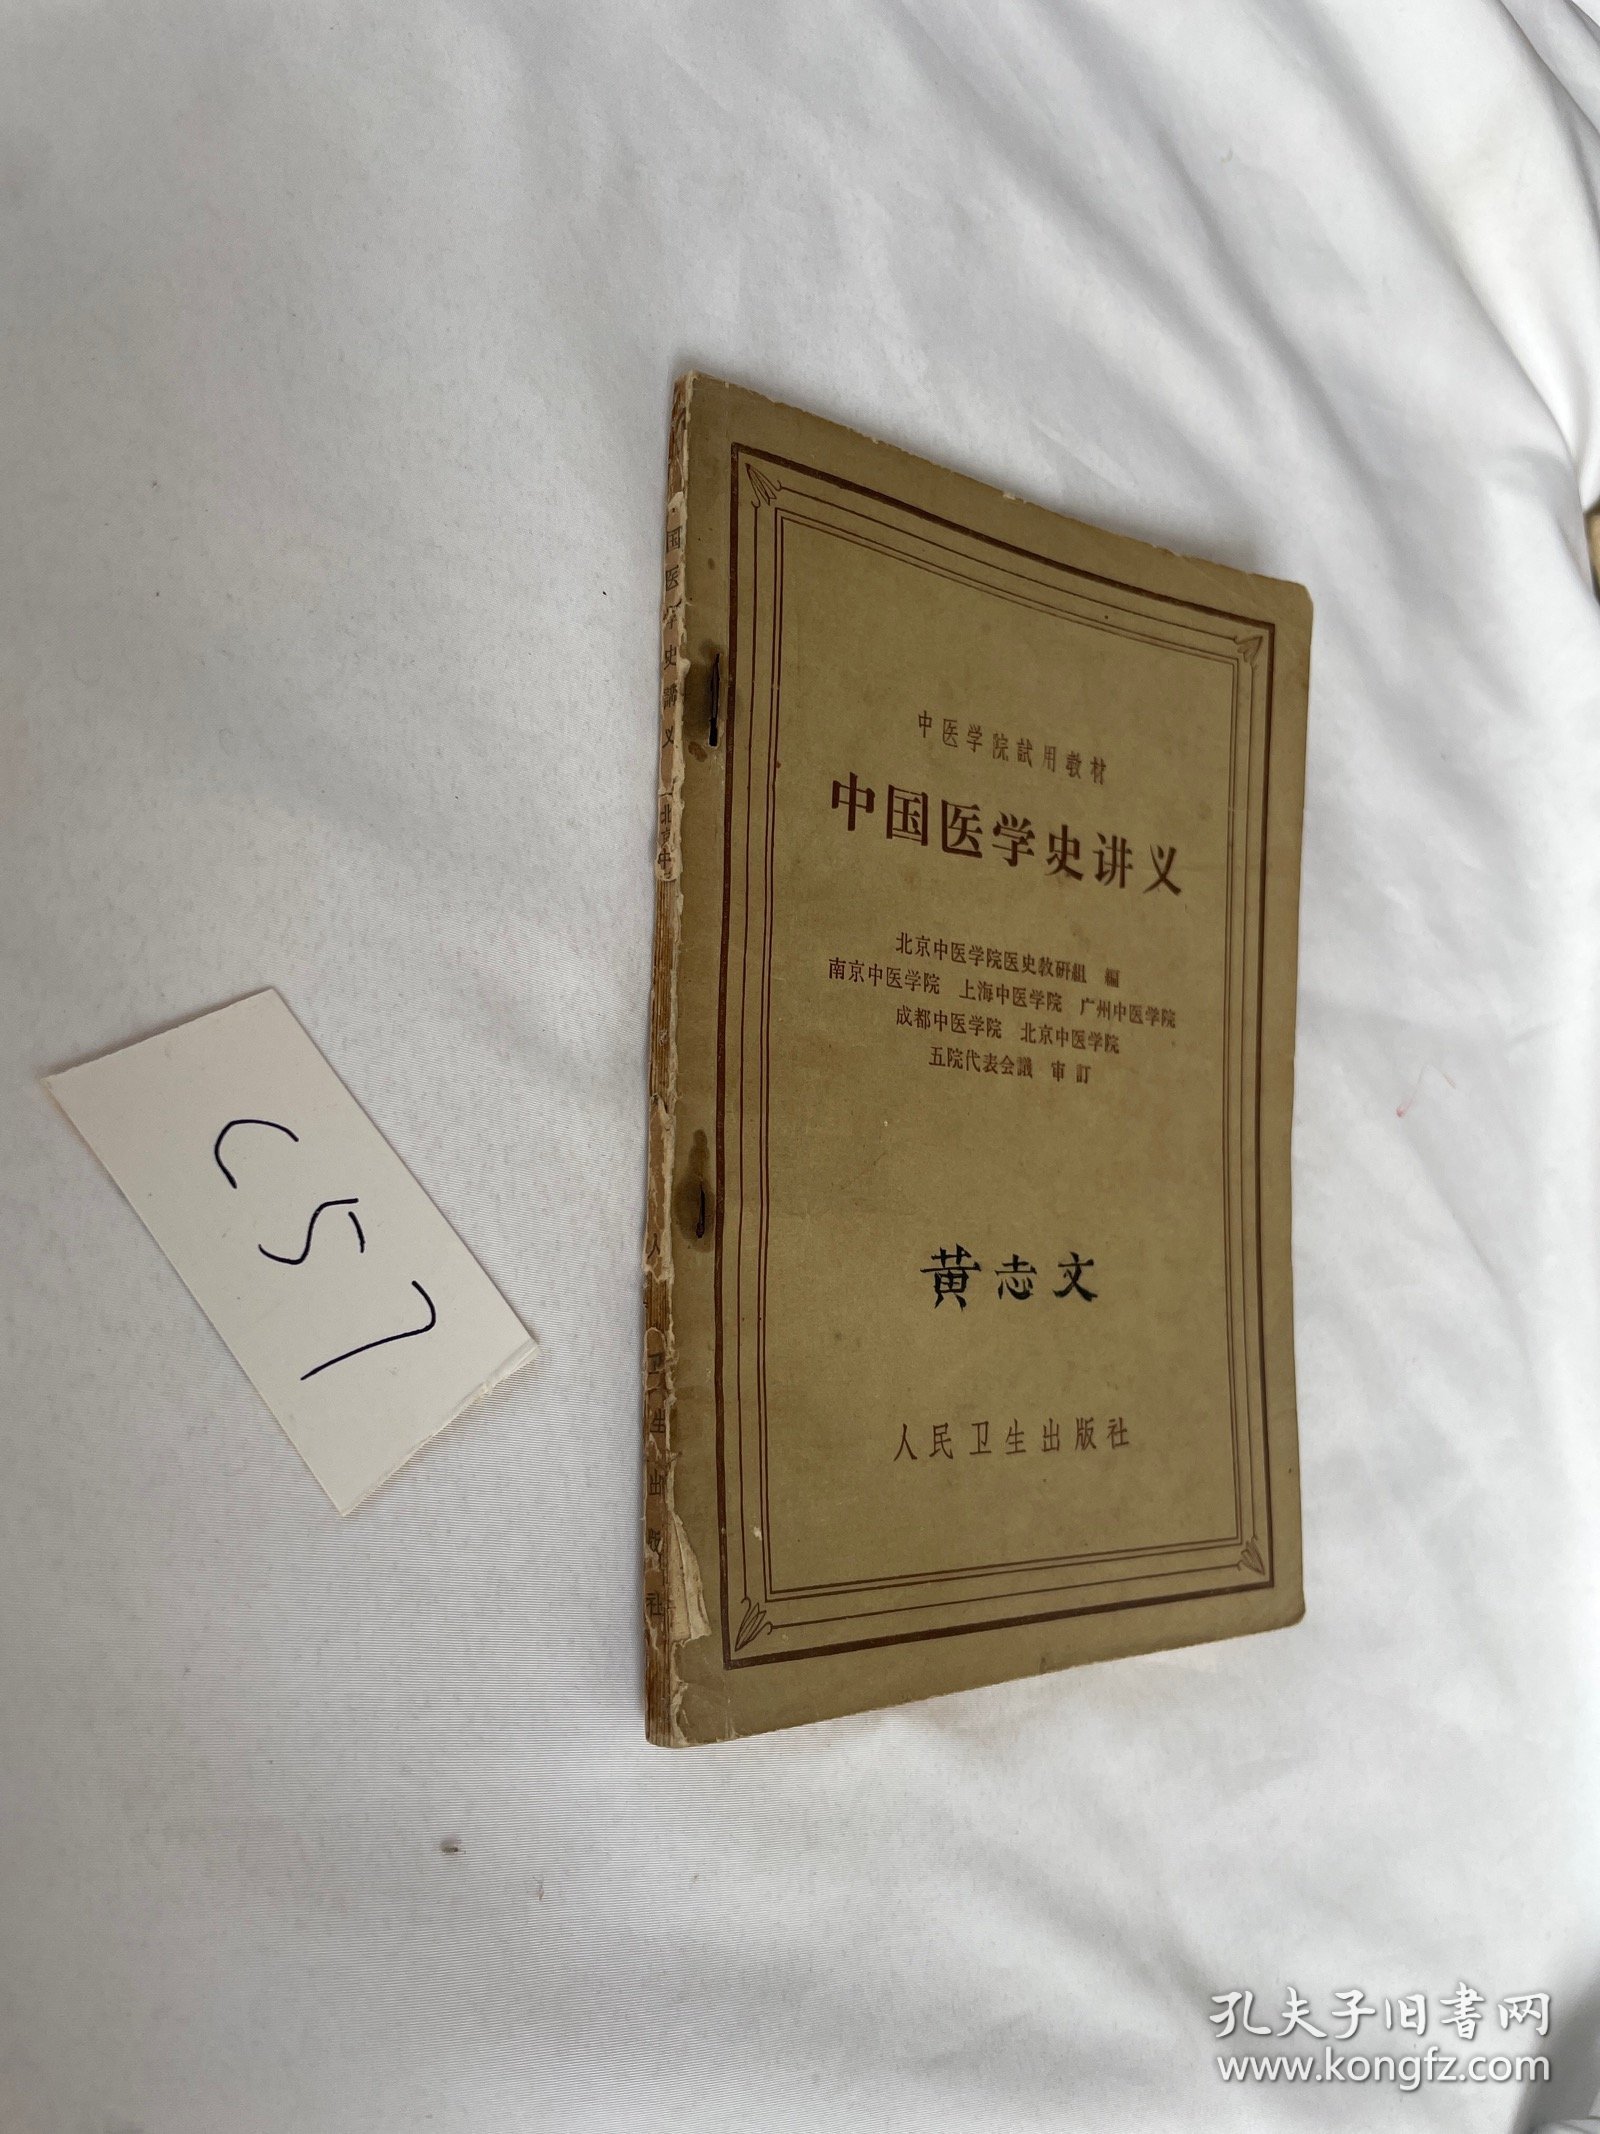 中医学院试用教材 中国医学史讲义 1962年的 品相见图